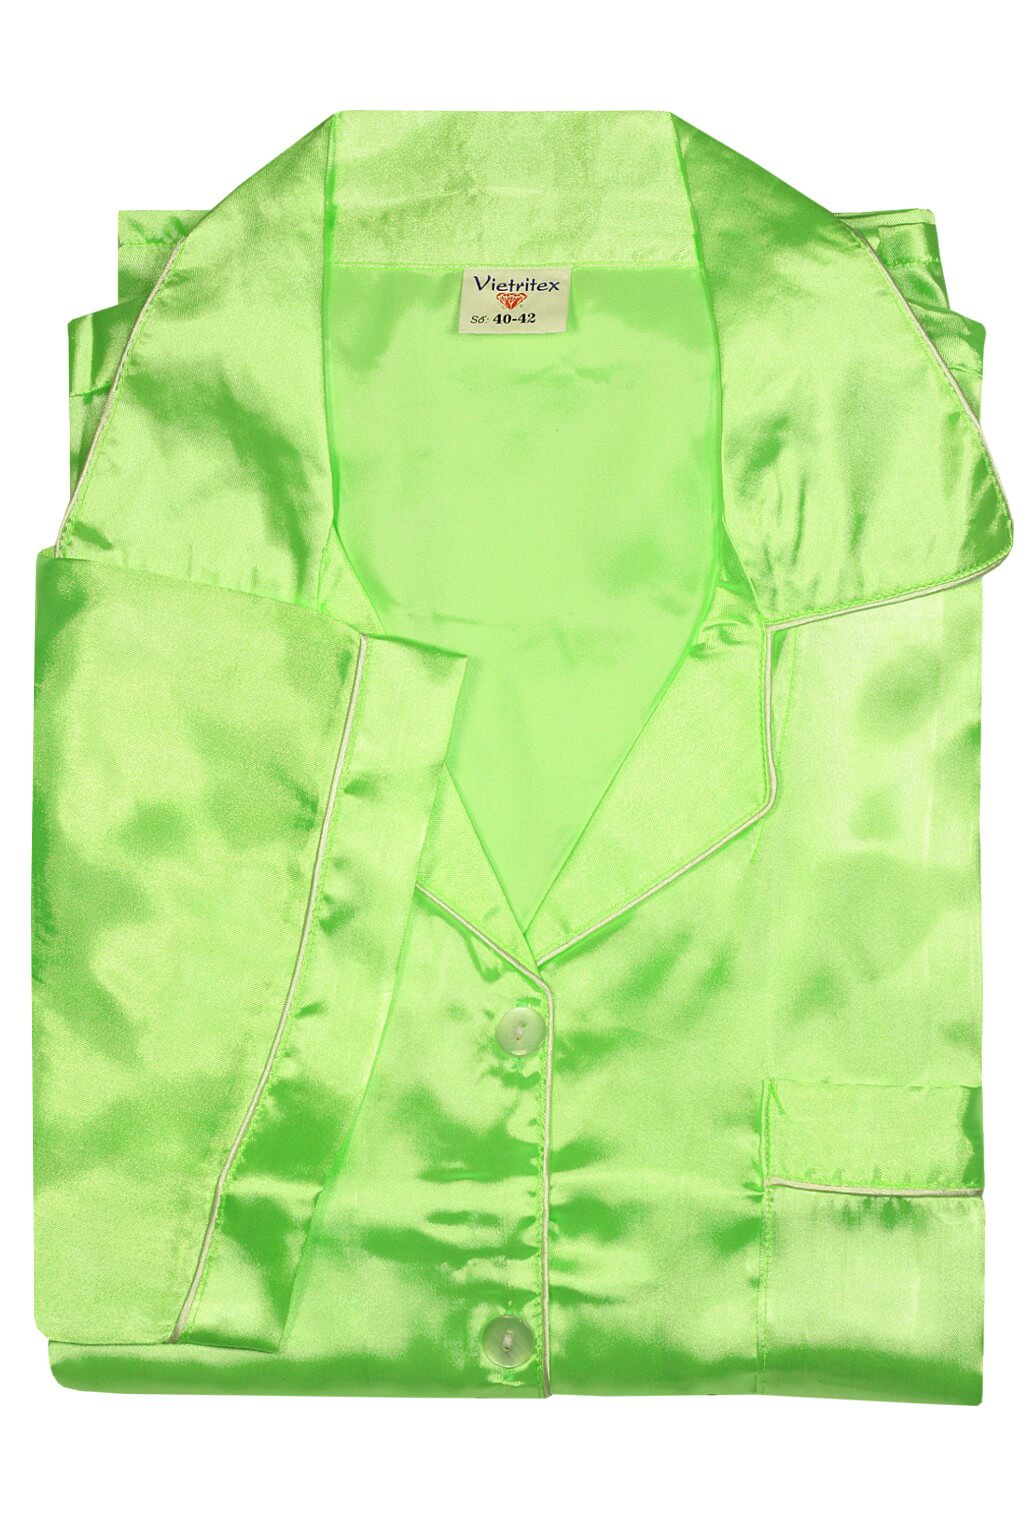 Kalipo Maxi saténové pyžamo 3XL zářivě zelená